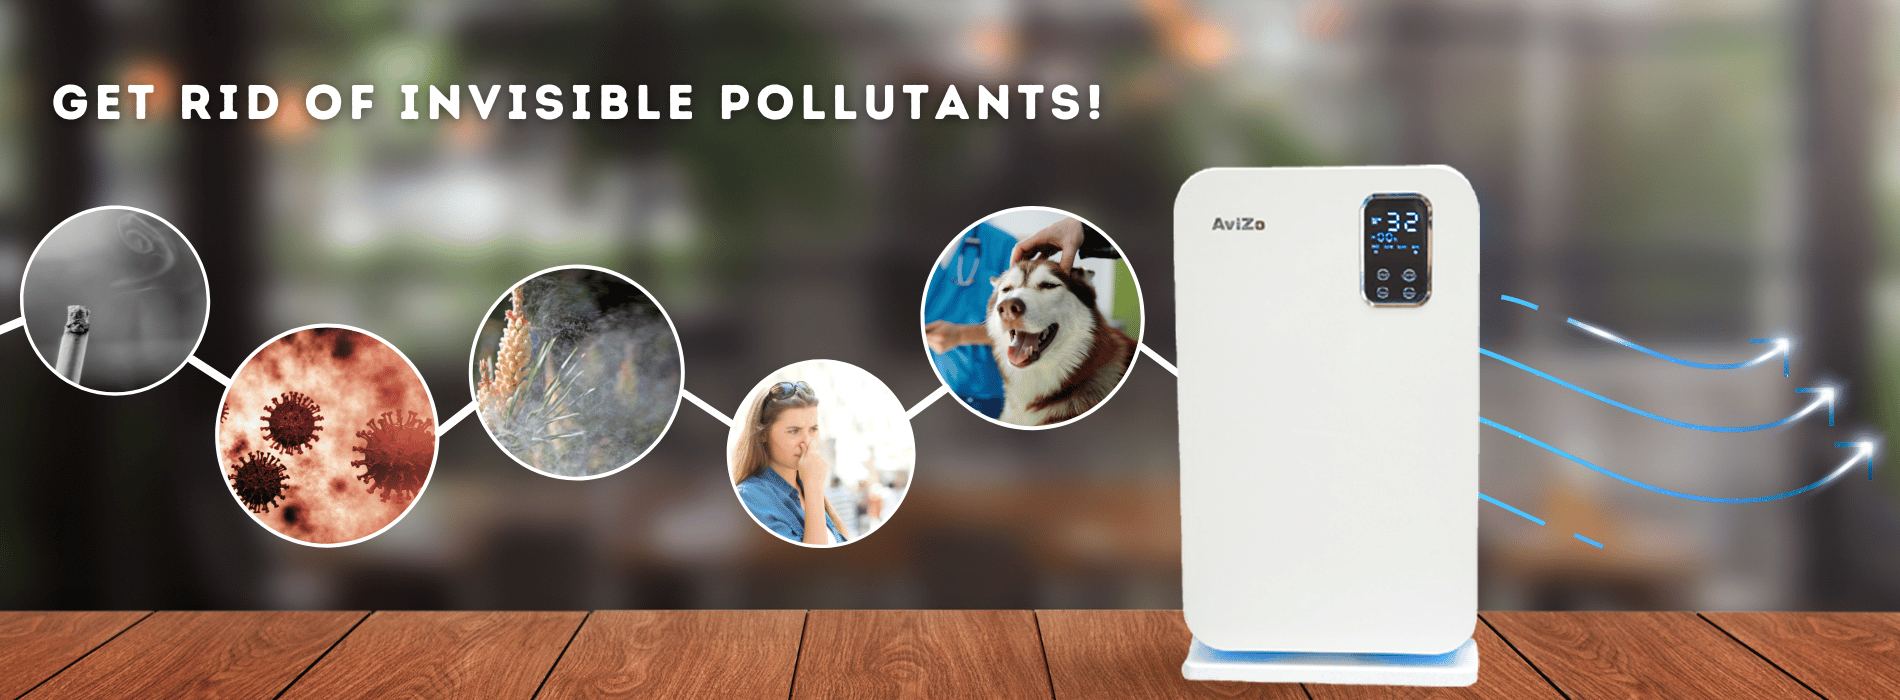 Avizo - best buy air purifier